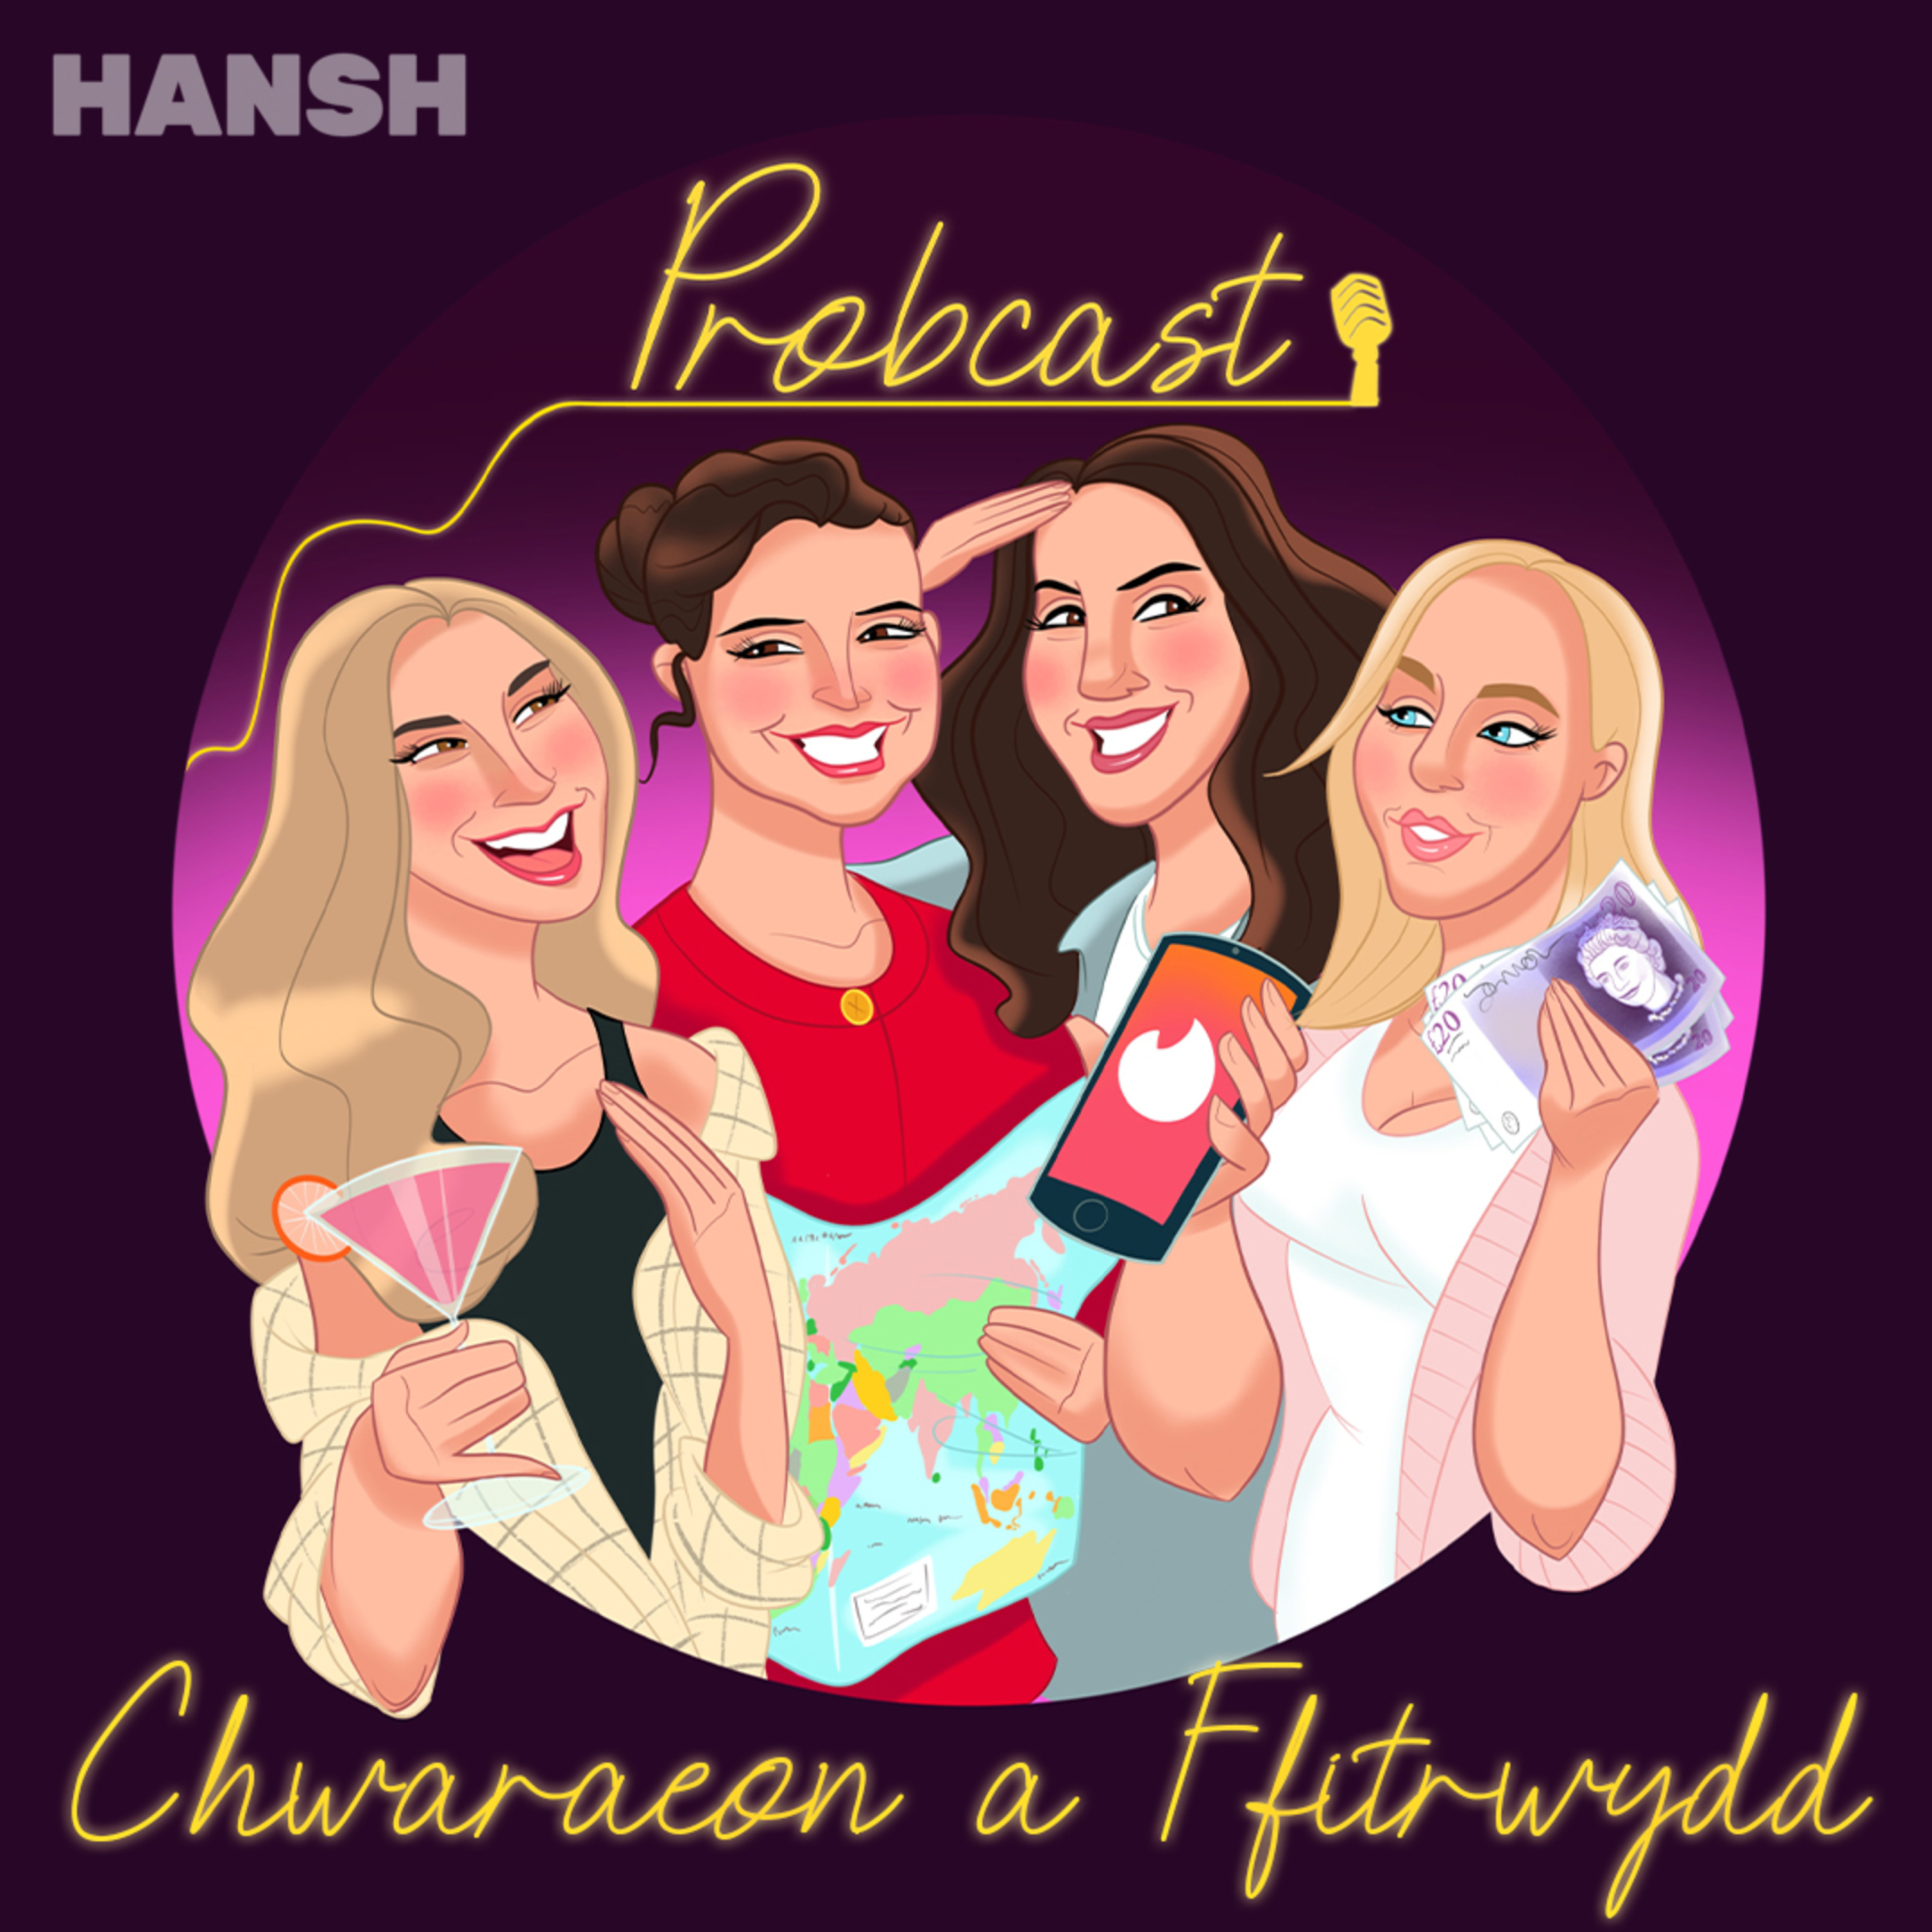 Hansh - PROBCAST - CHWARAEON A FFITRWYDD